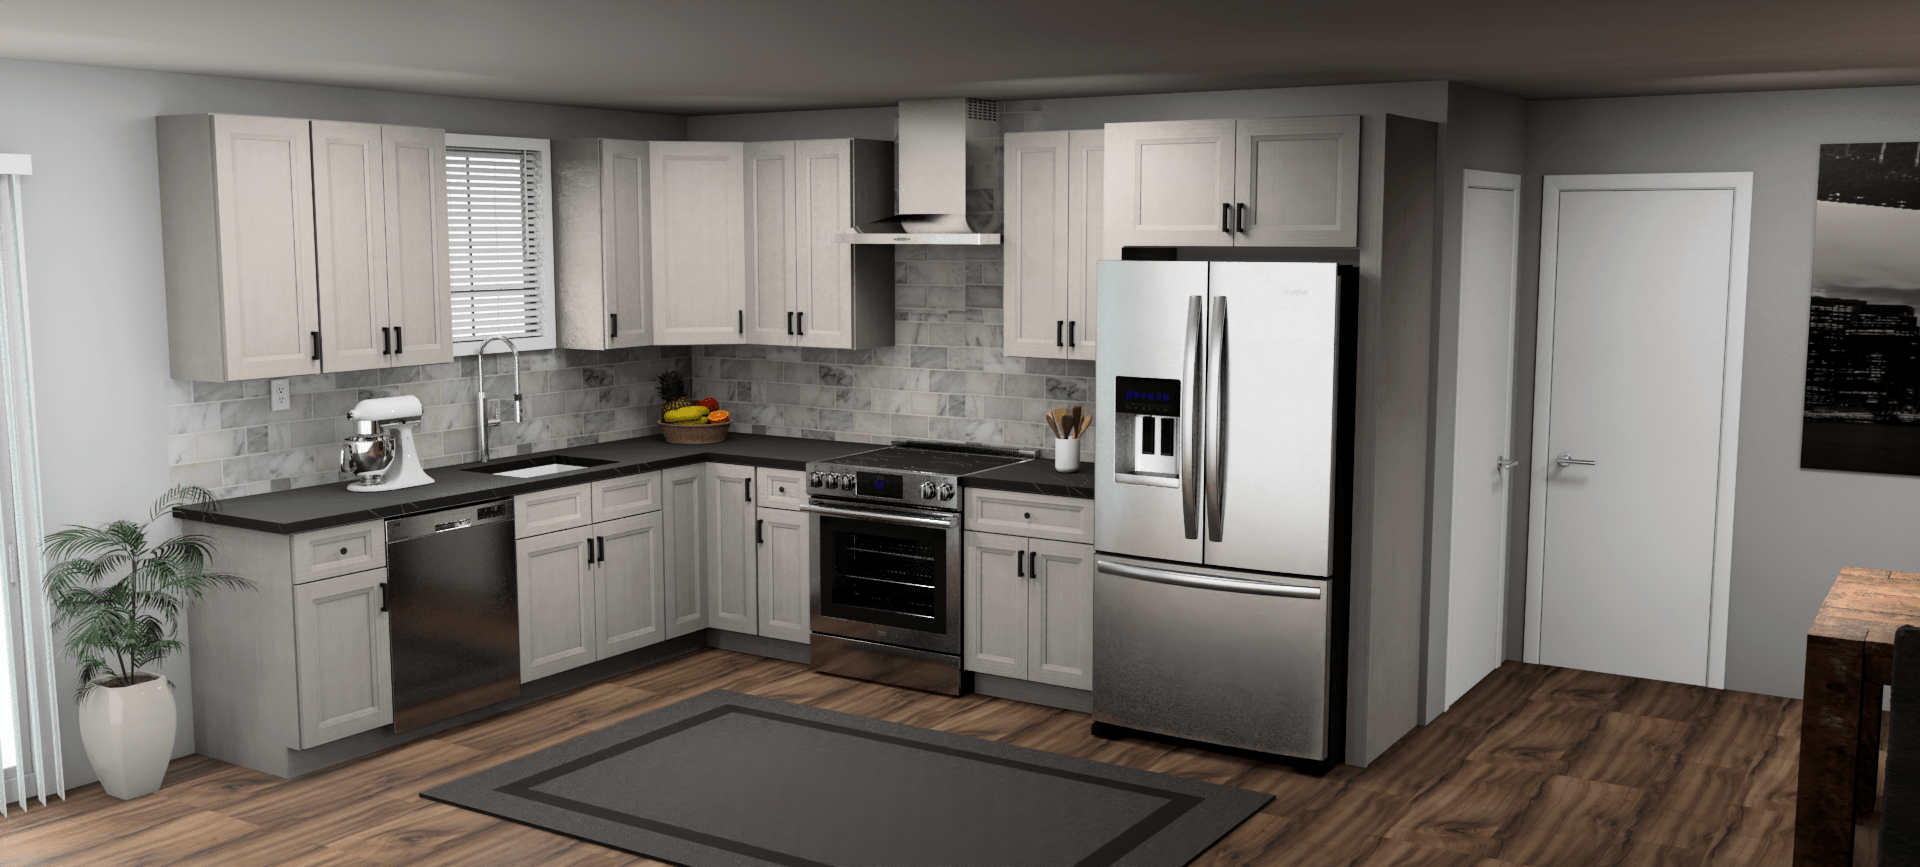 Fabuwood Allure Onyx Horizon 9 x 12 L Shaped Kitchen Main Layout Photo